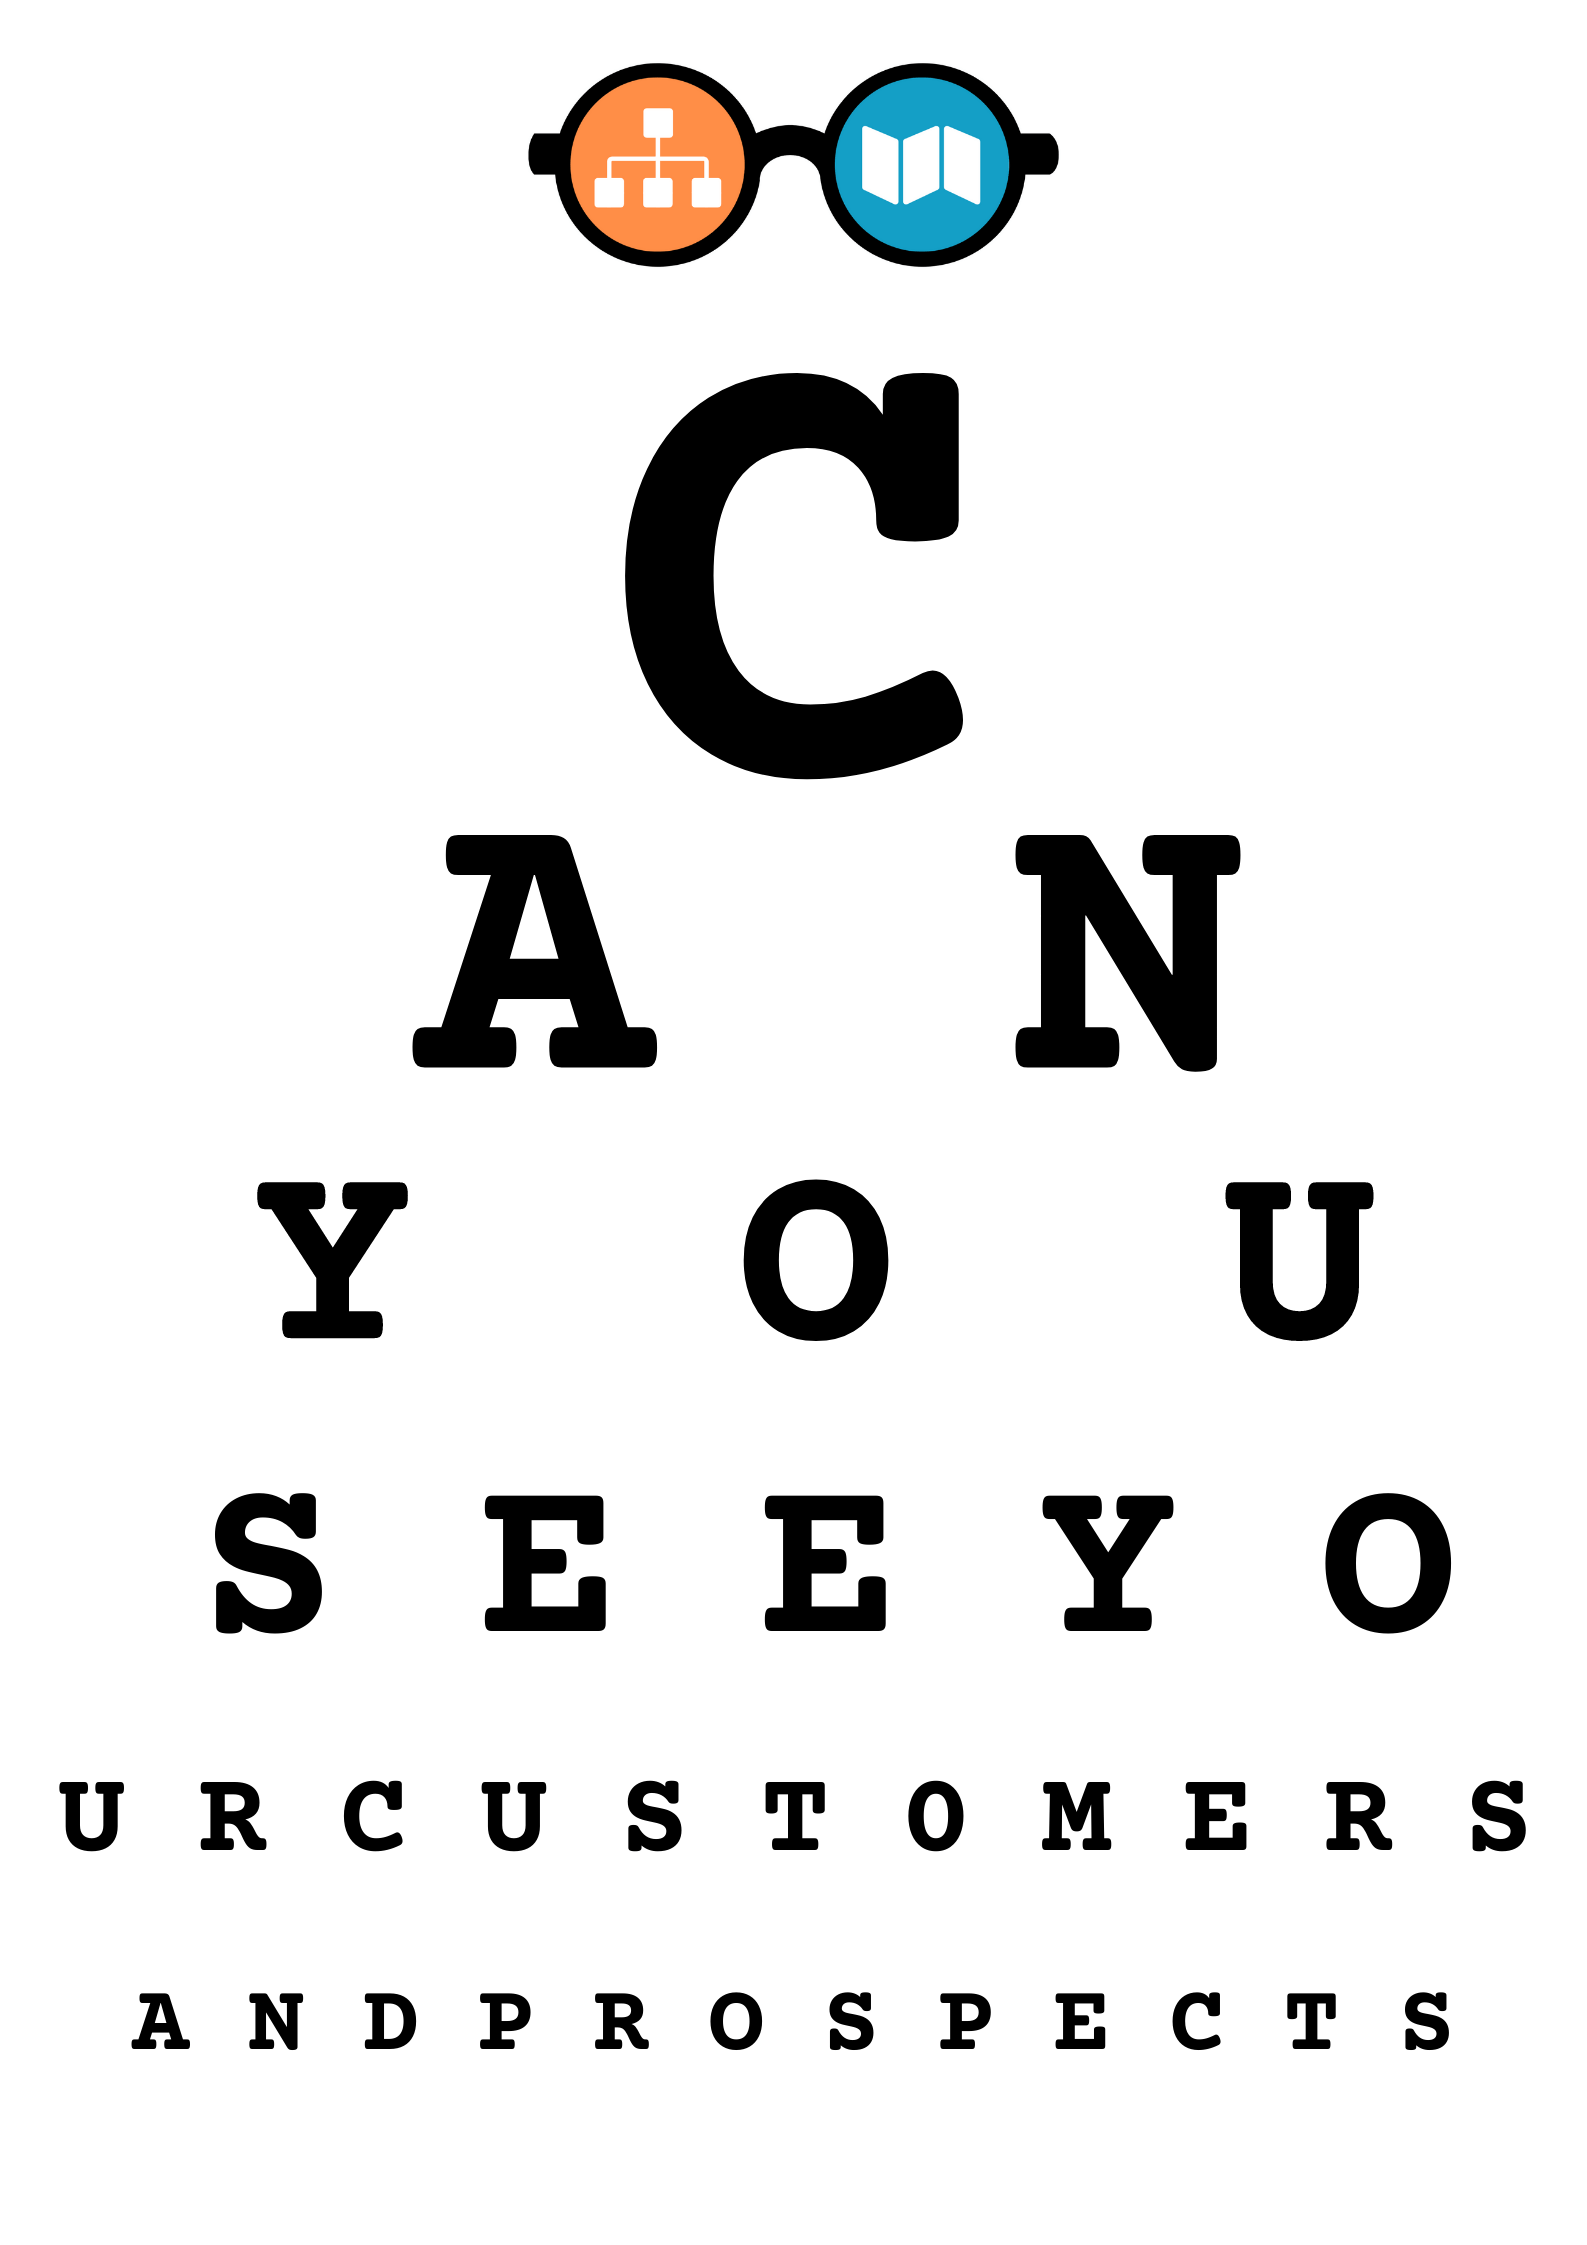 orgcharthub newsletter eye chart